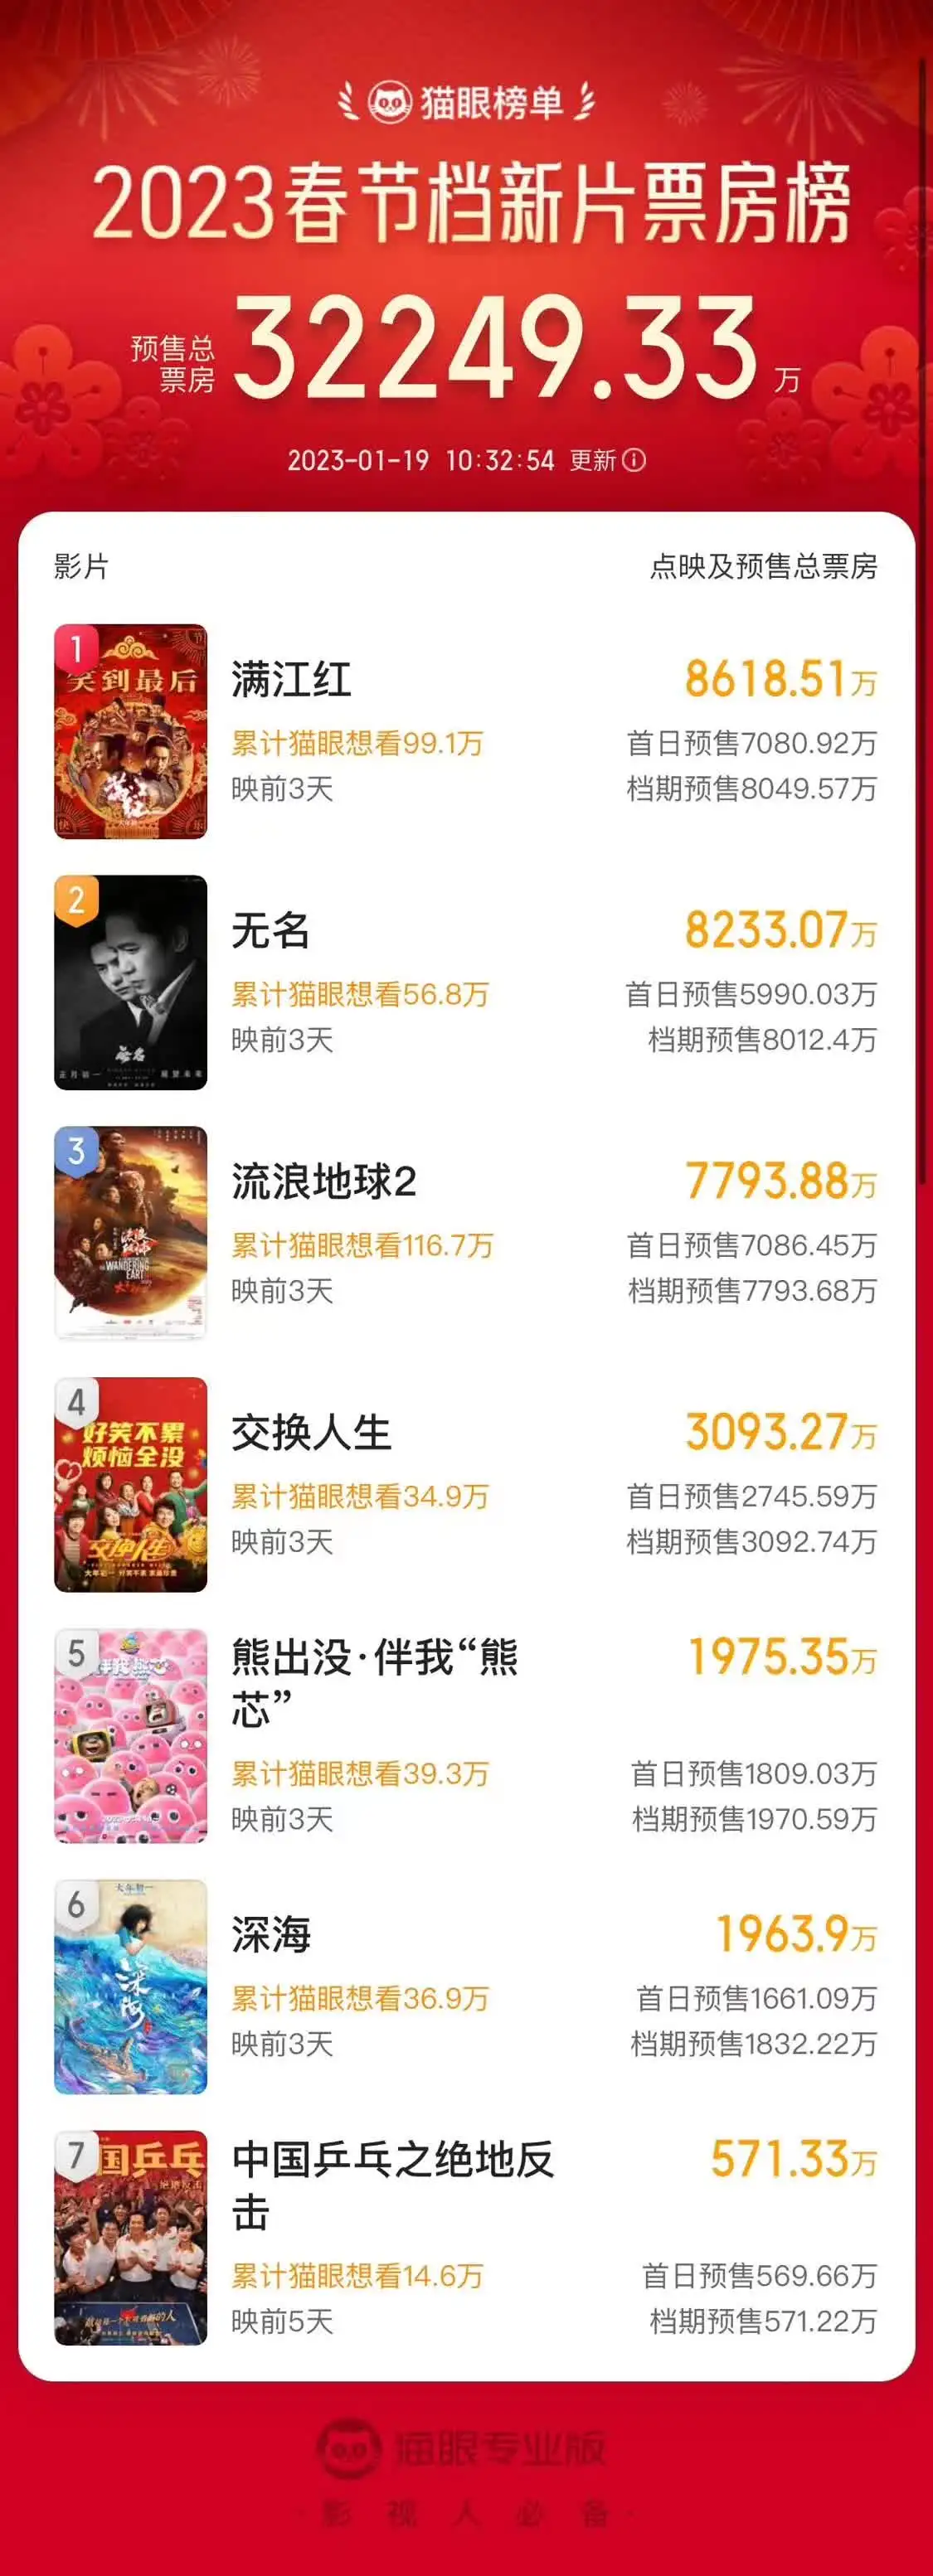 春节档预售破3亿 《满江红》8618万赶超《无名》暂列第一